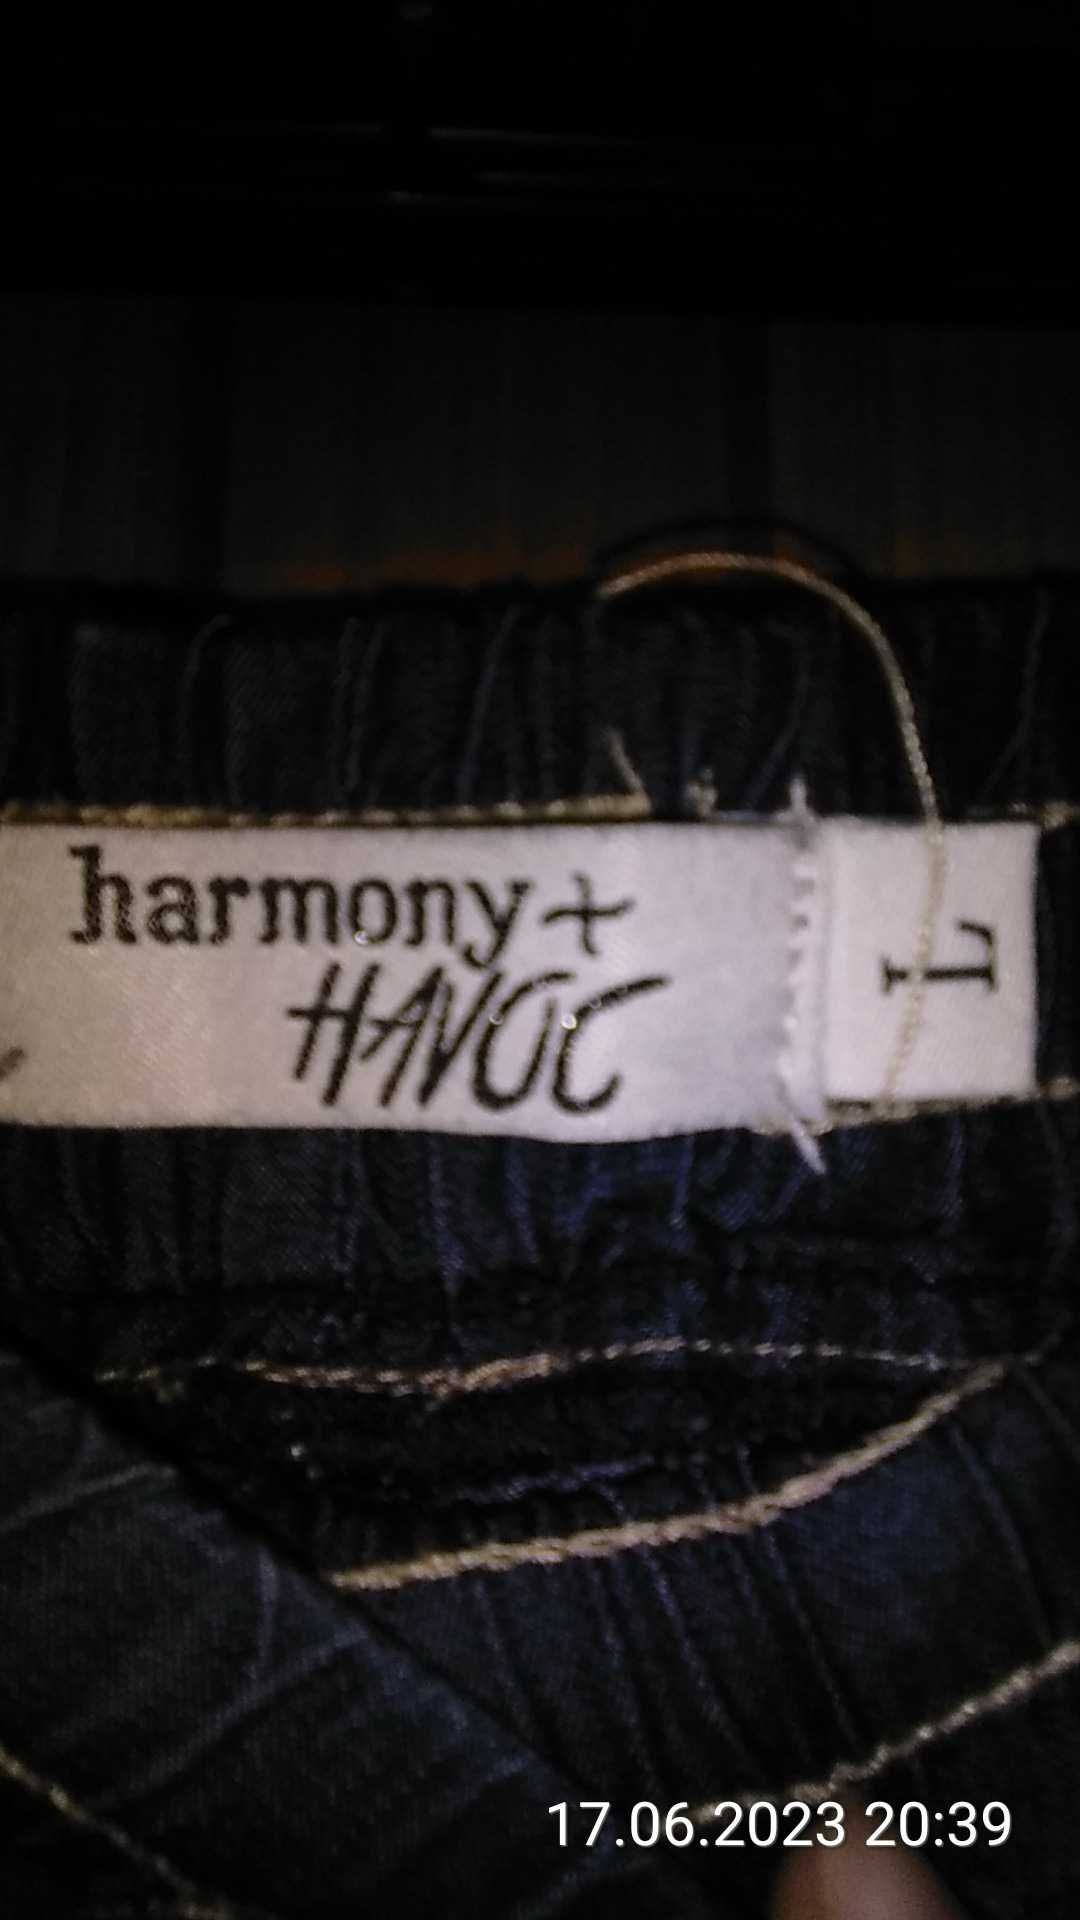 Harmony + Havoc Lyocell-sztuczny jedwab niebieskie spodnie damskie 40